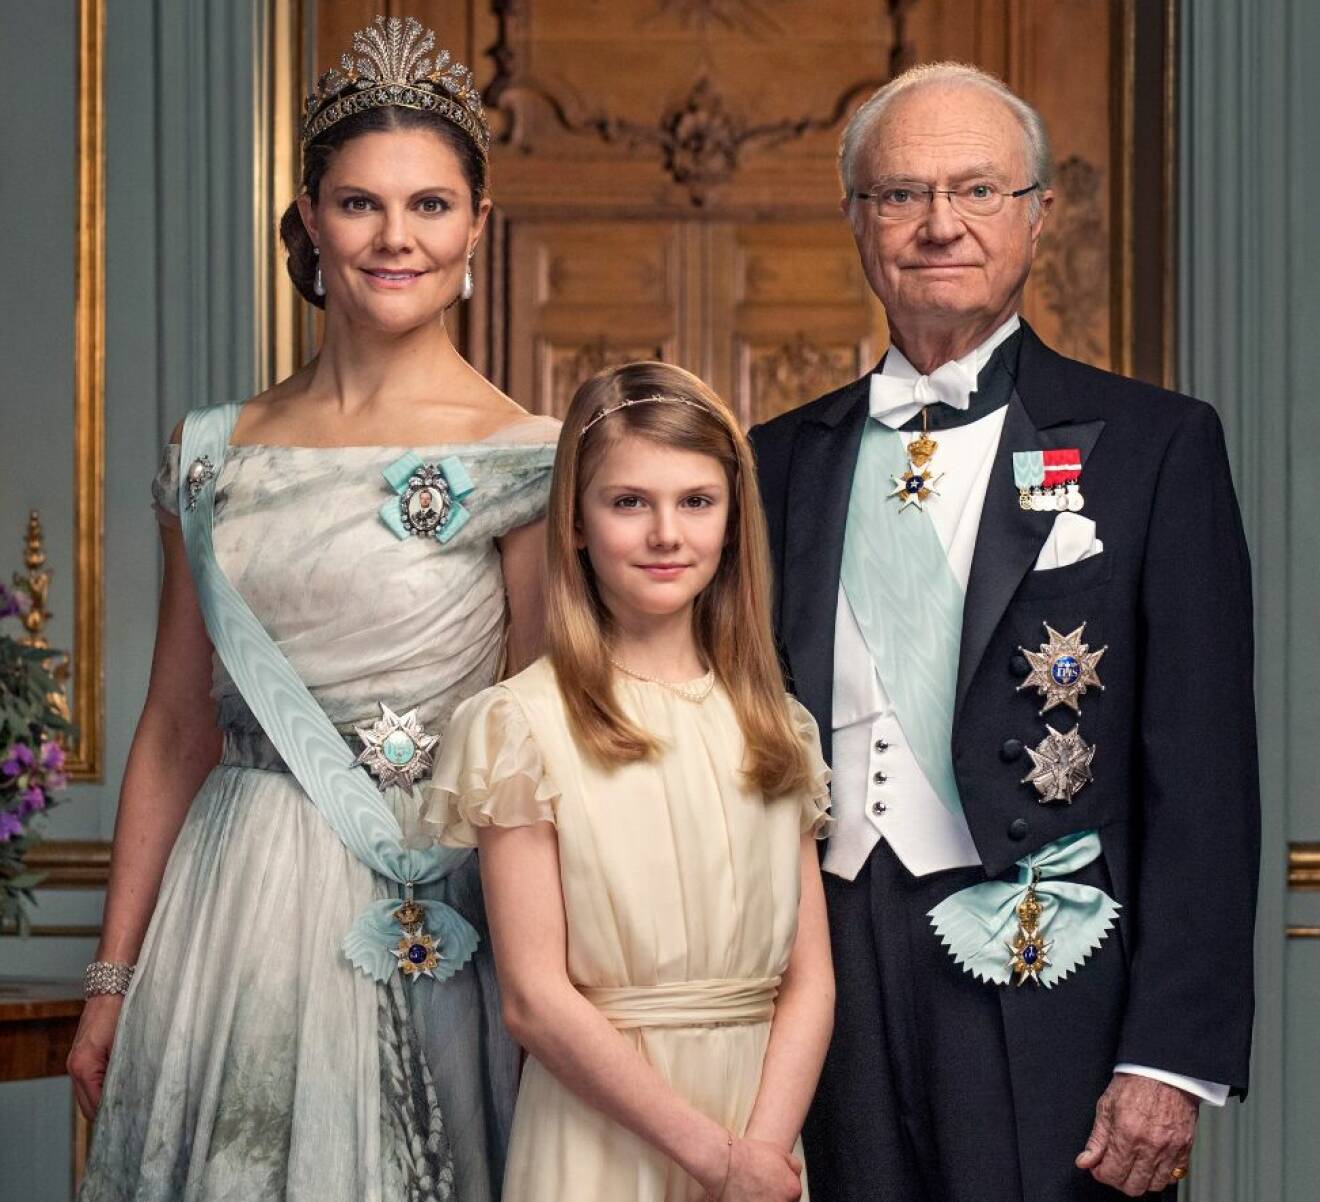 Kronprinsessan Victoria, prinsessan Estelle och kungen på hovets officiella bild